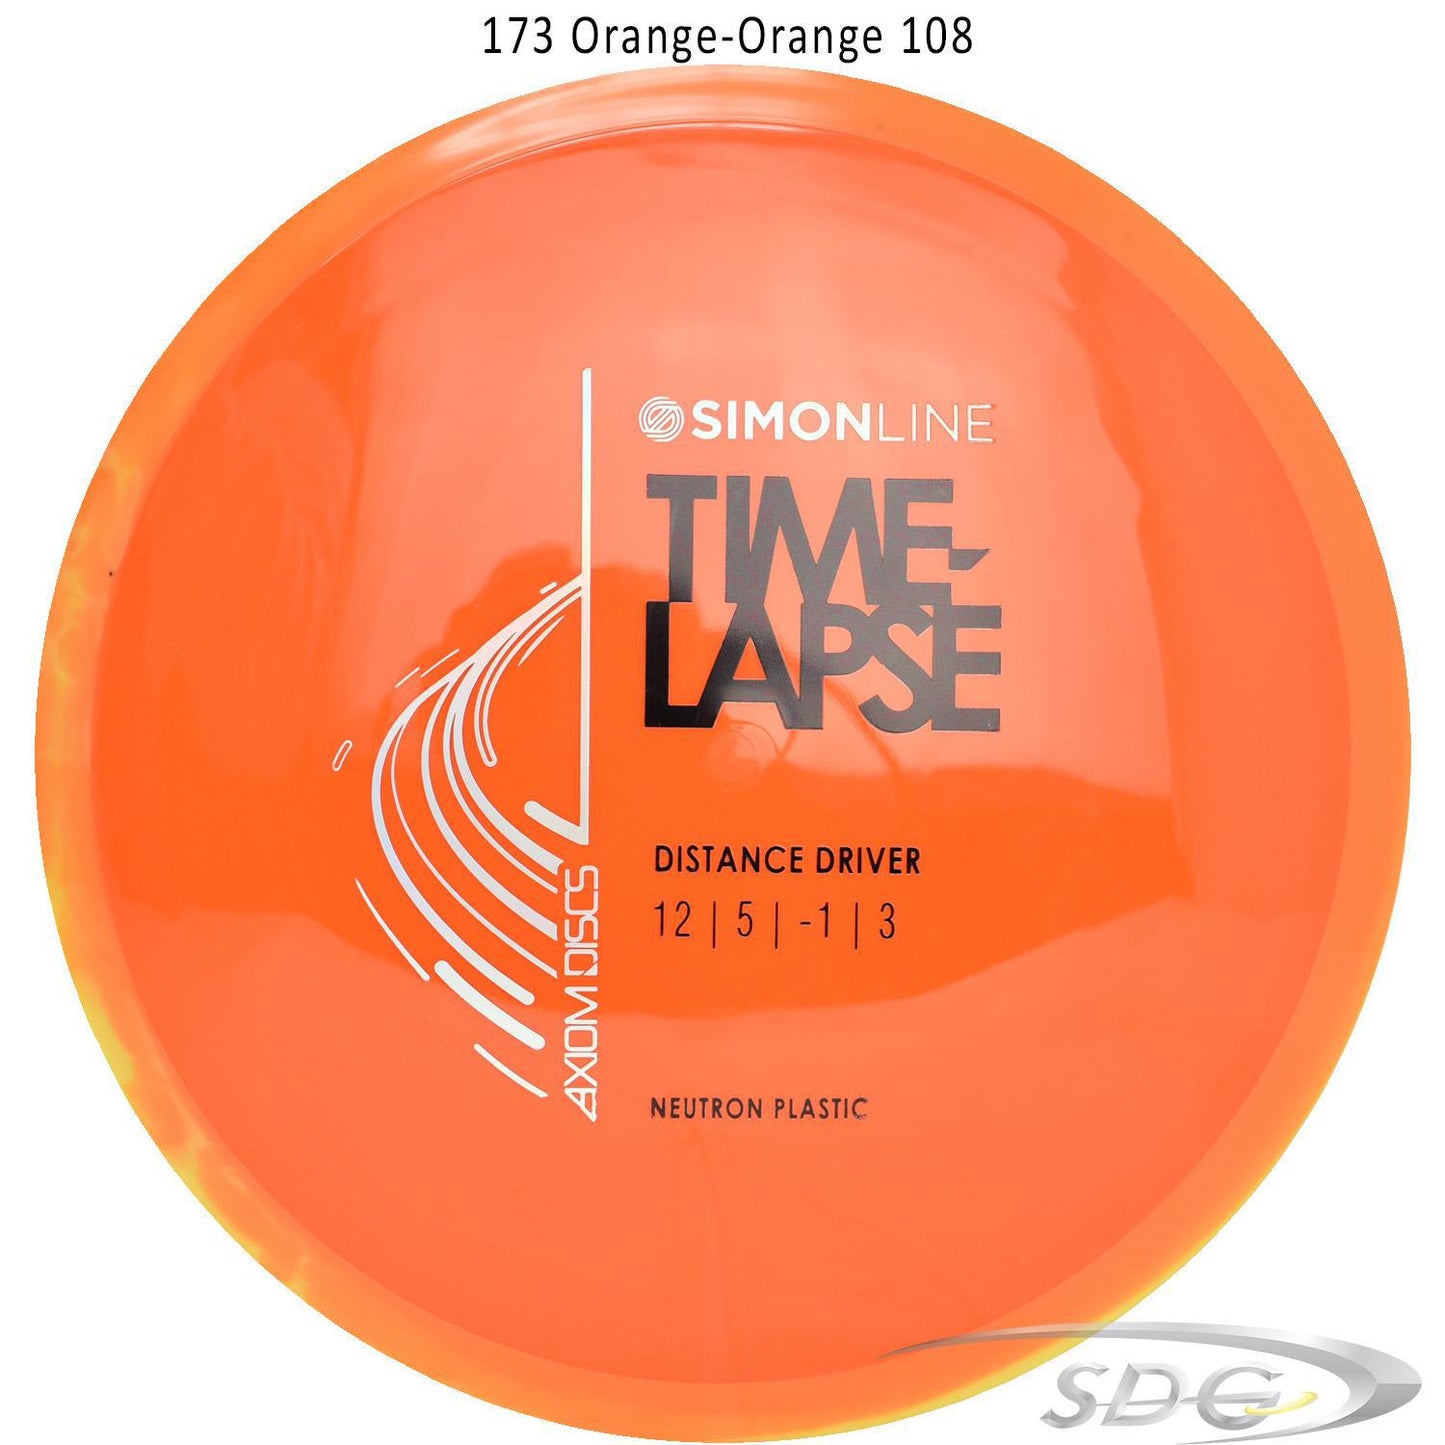 axiom-neutron-time-lapse-simon-line-disc-golf-distance-driver 173 Orange-Orange 108